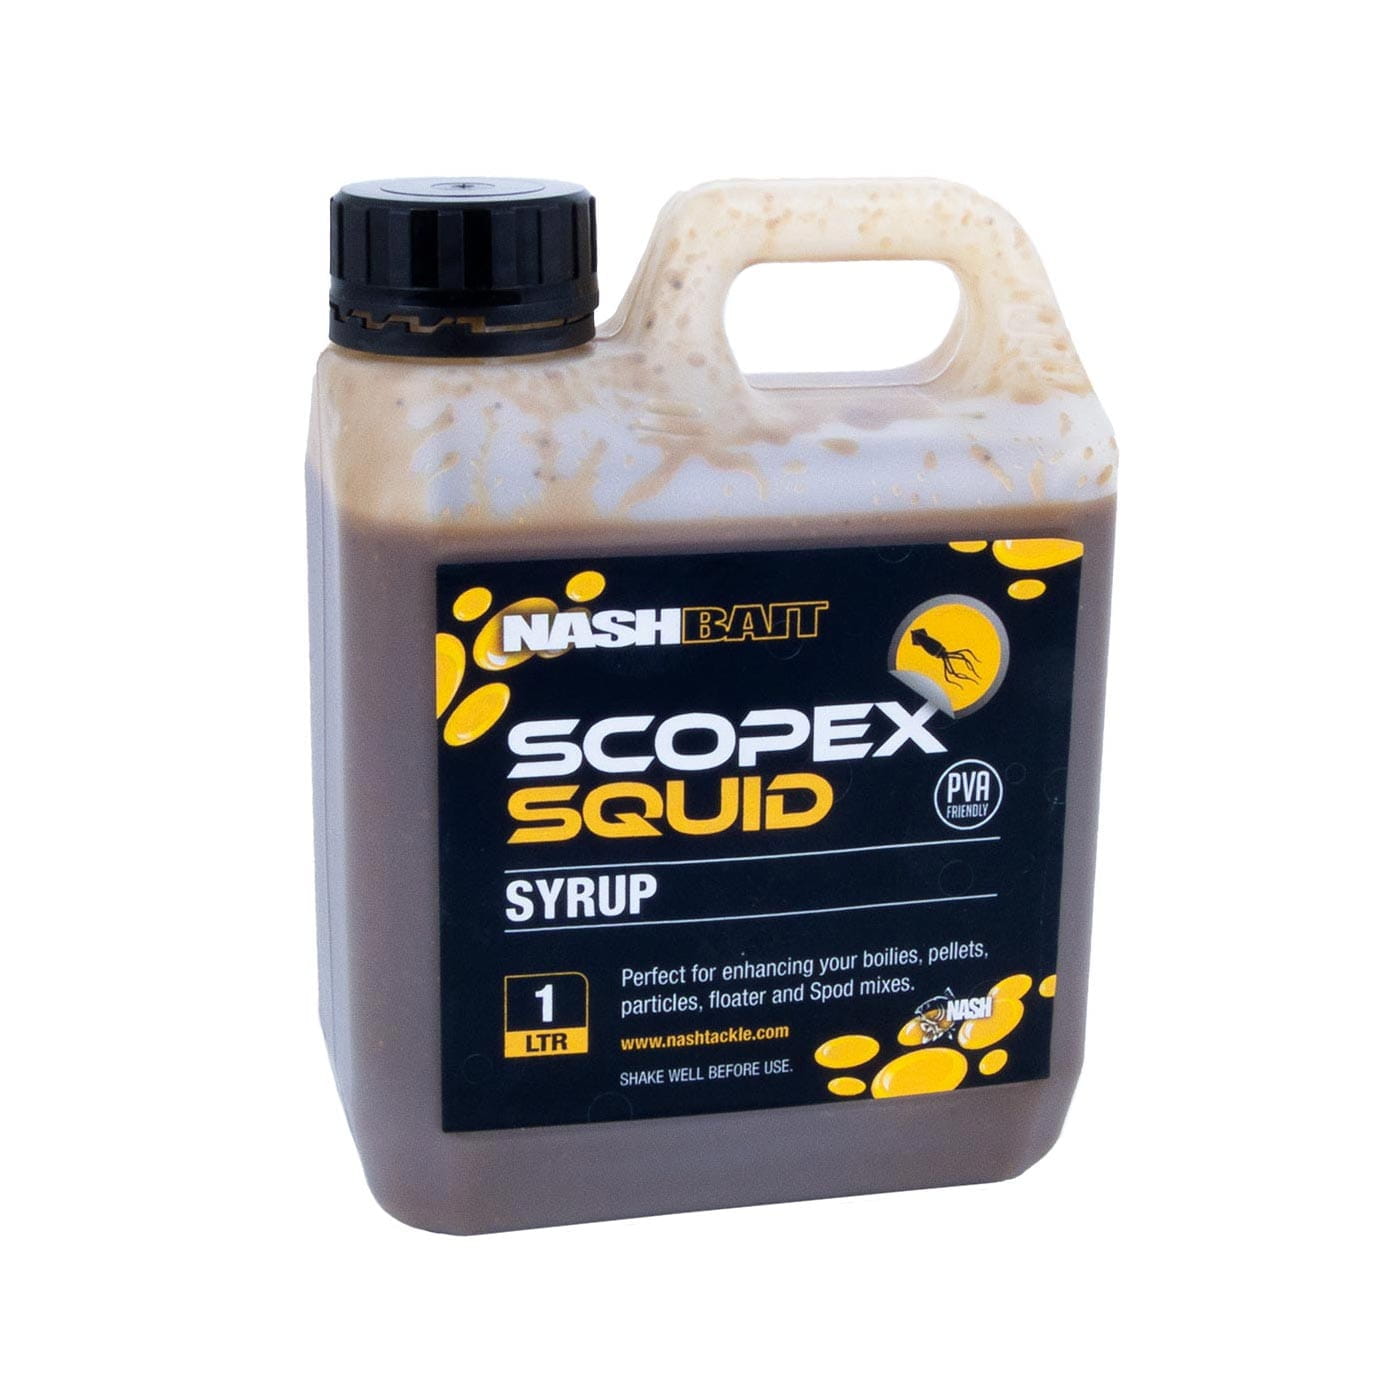 Scopex Squid - Syrup 1L